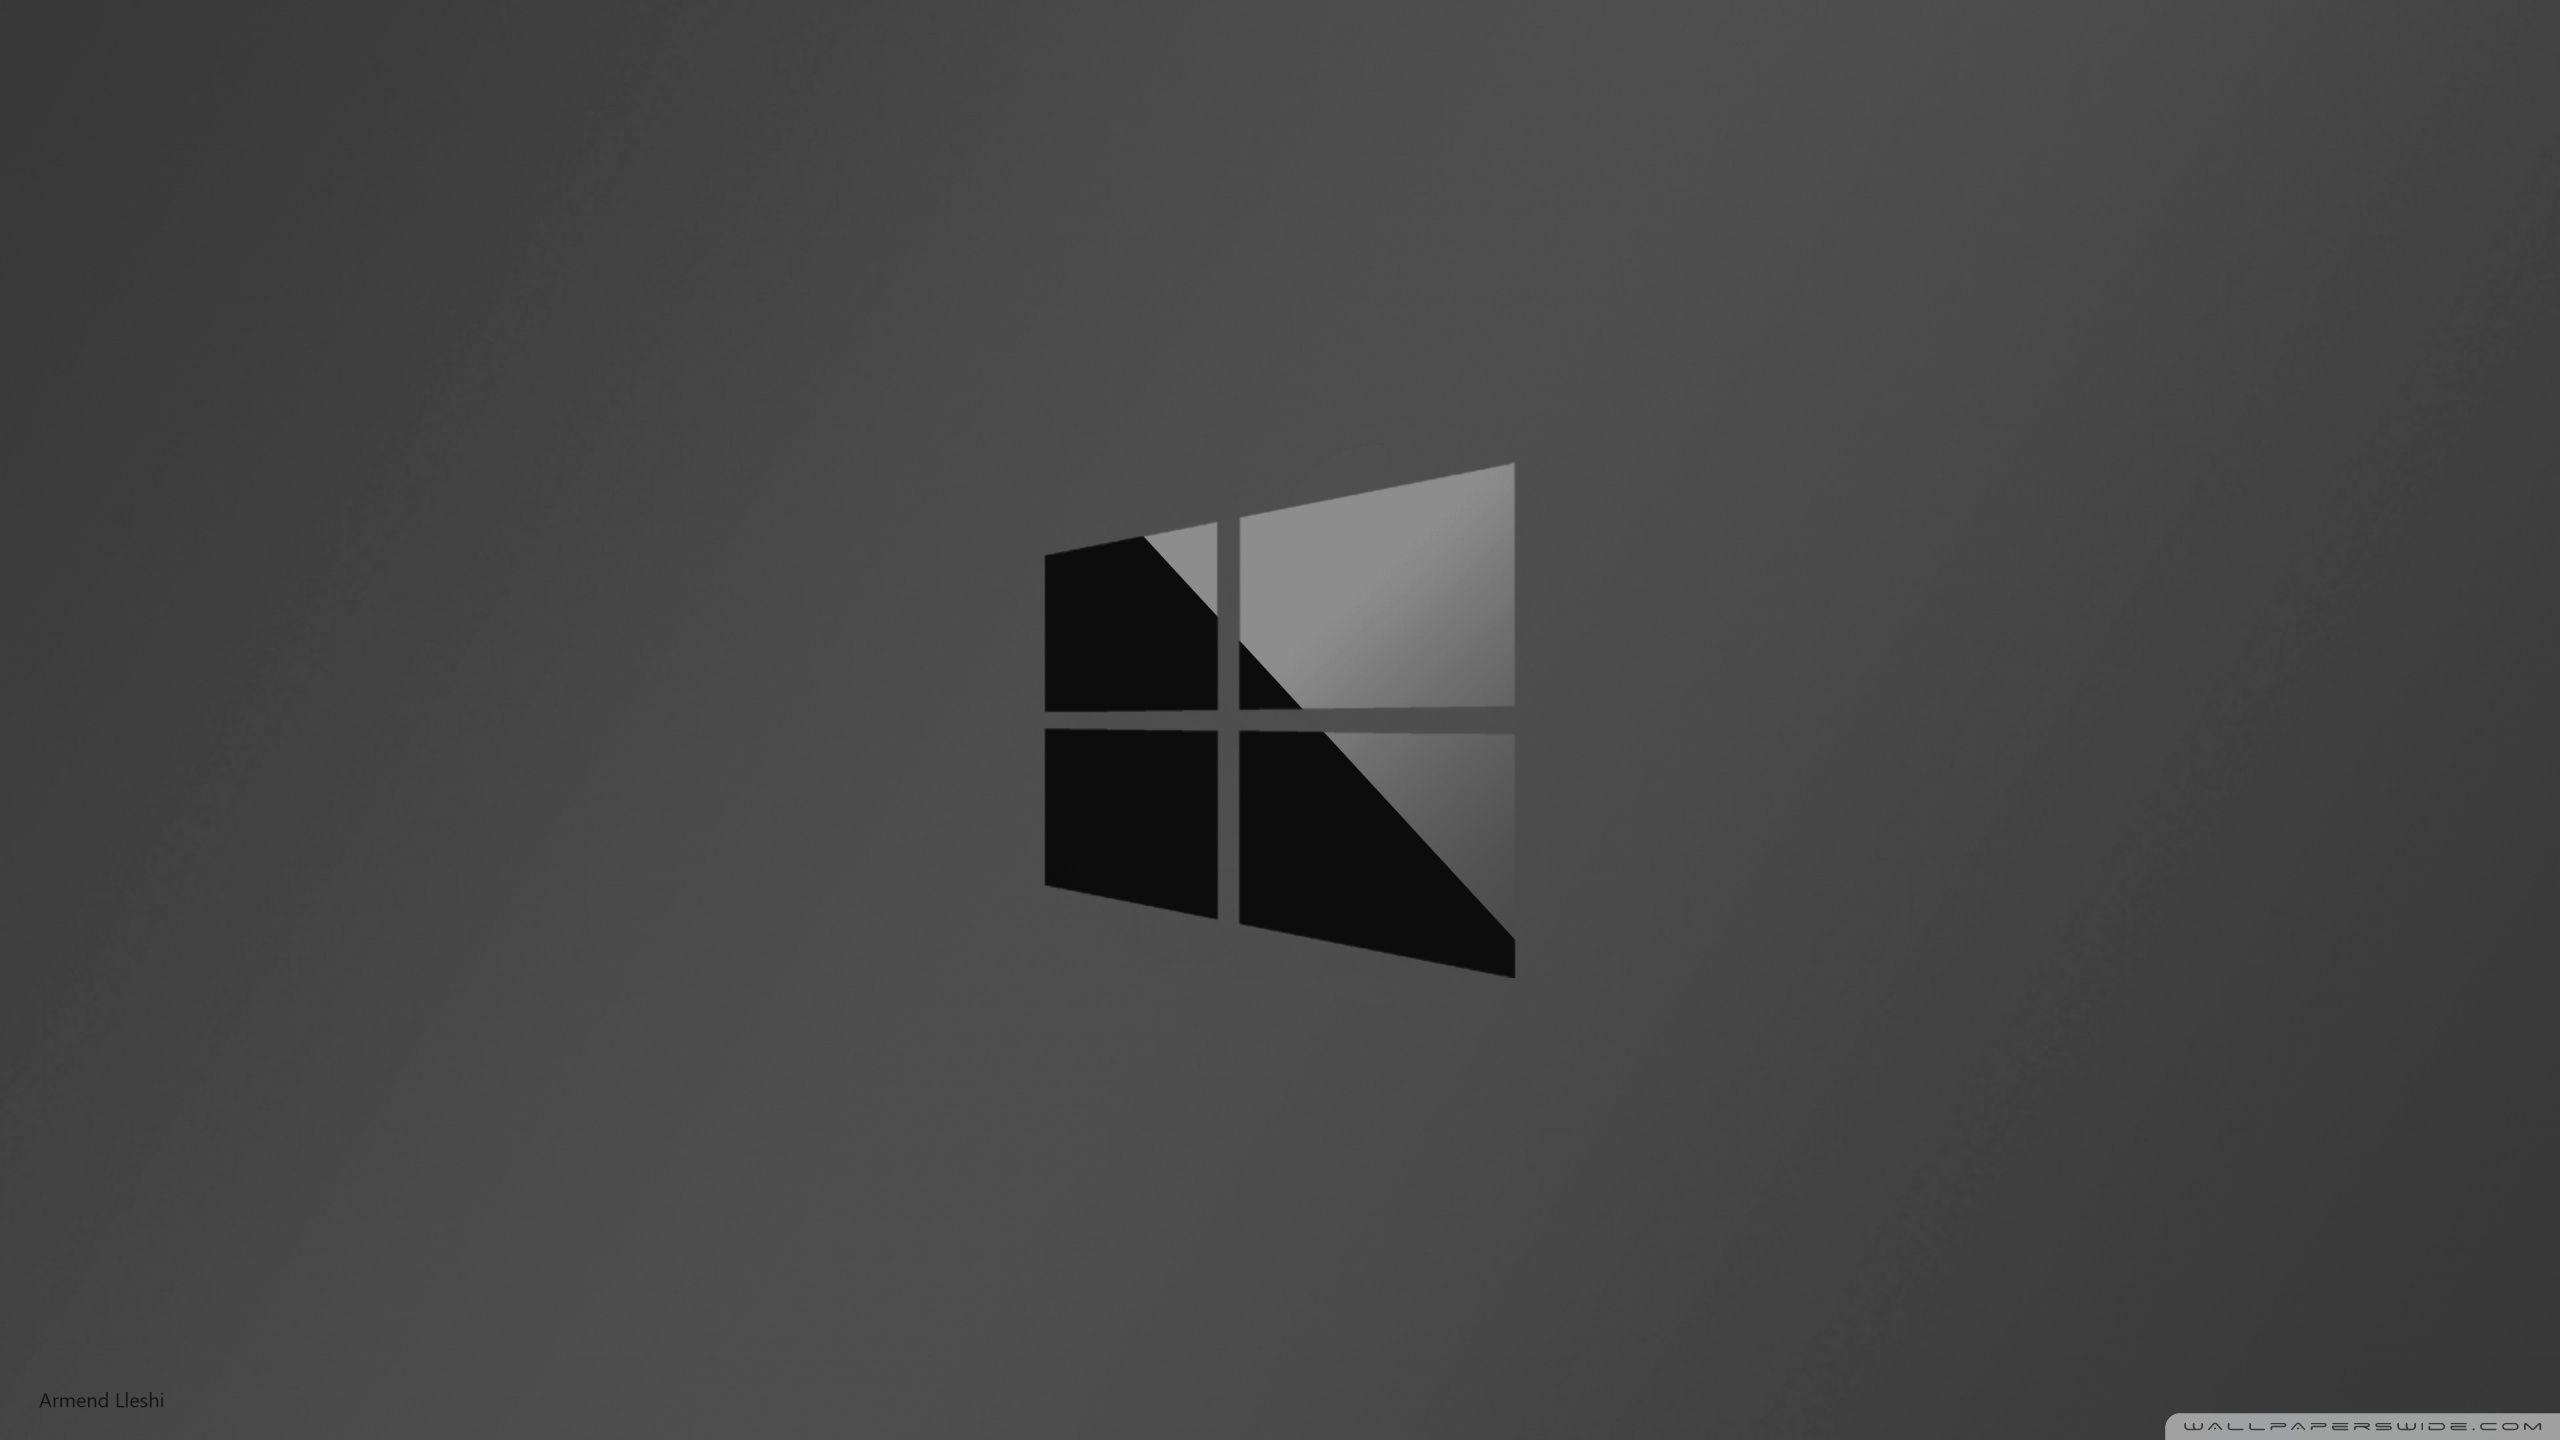 Mê mẩn với hình nền Windows 10 đen đẹp, tạo cảm giác tĩnh lặng và sự tập trung. Khám phá ngay hình ảnh liên quan để tải về những bức hình đẹp đến ngỡ ngàng cho màn hình desktop của bạn.